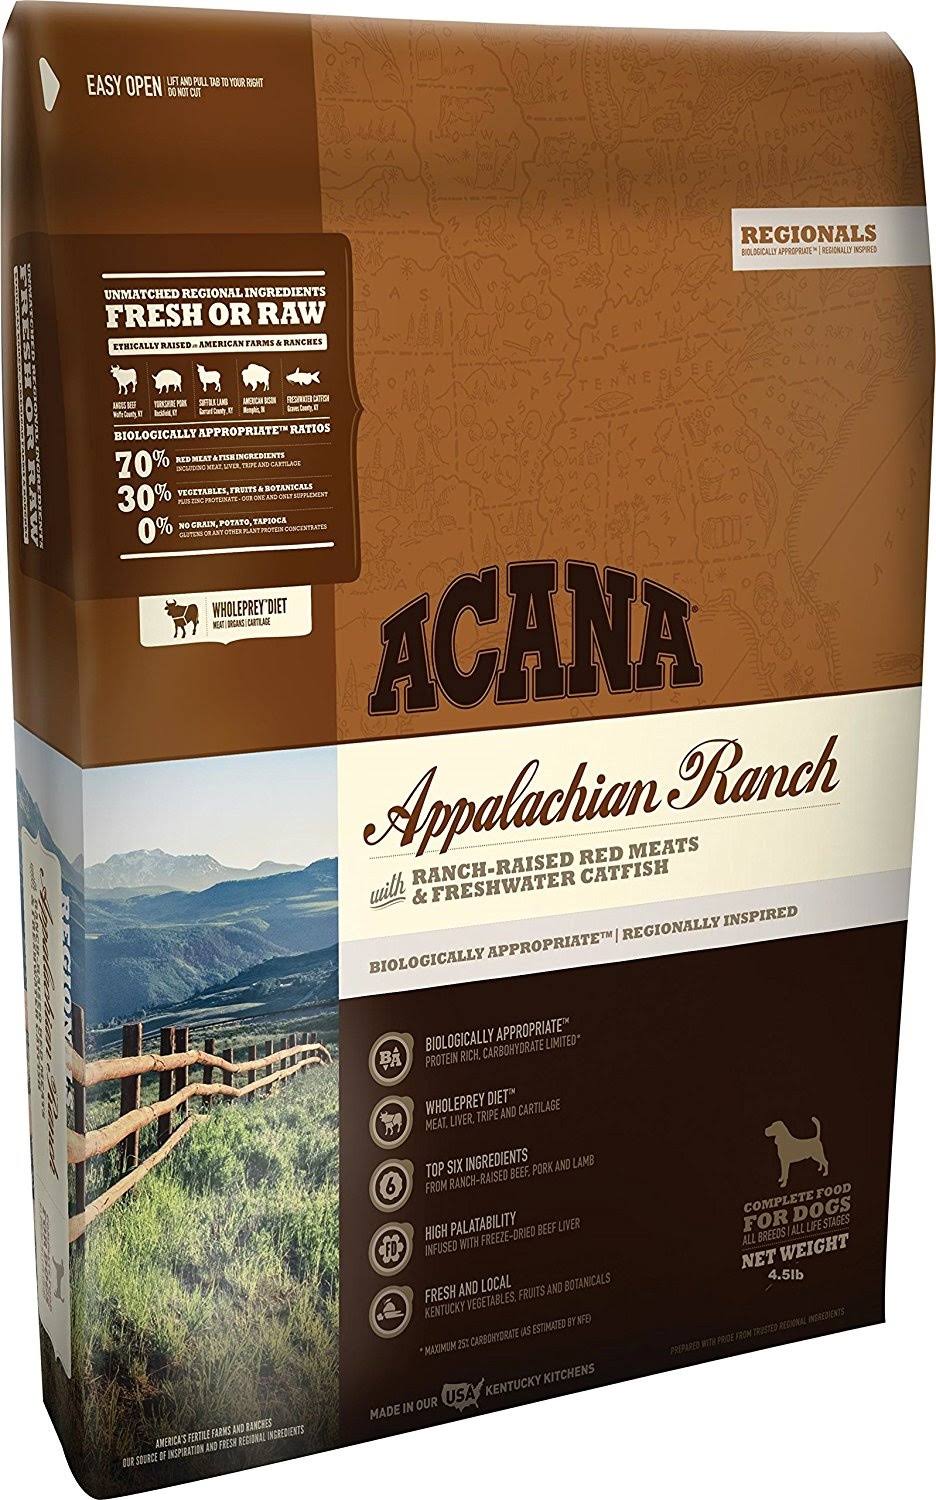 Orijen Acana Regionals Appalachian Ranch for Dogs, 2kg